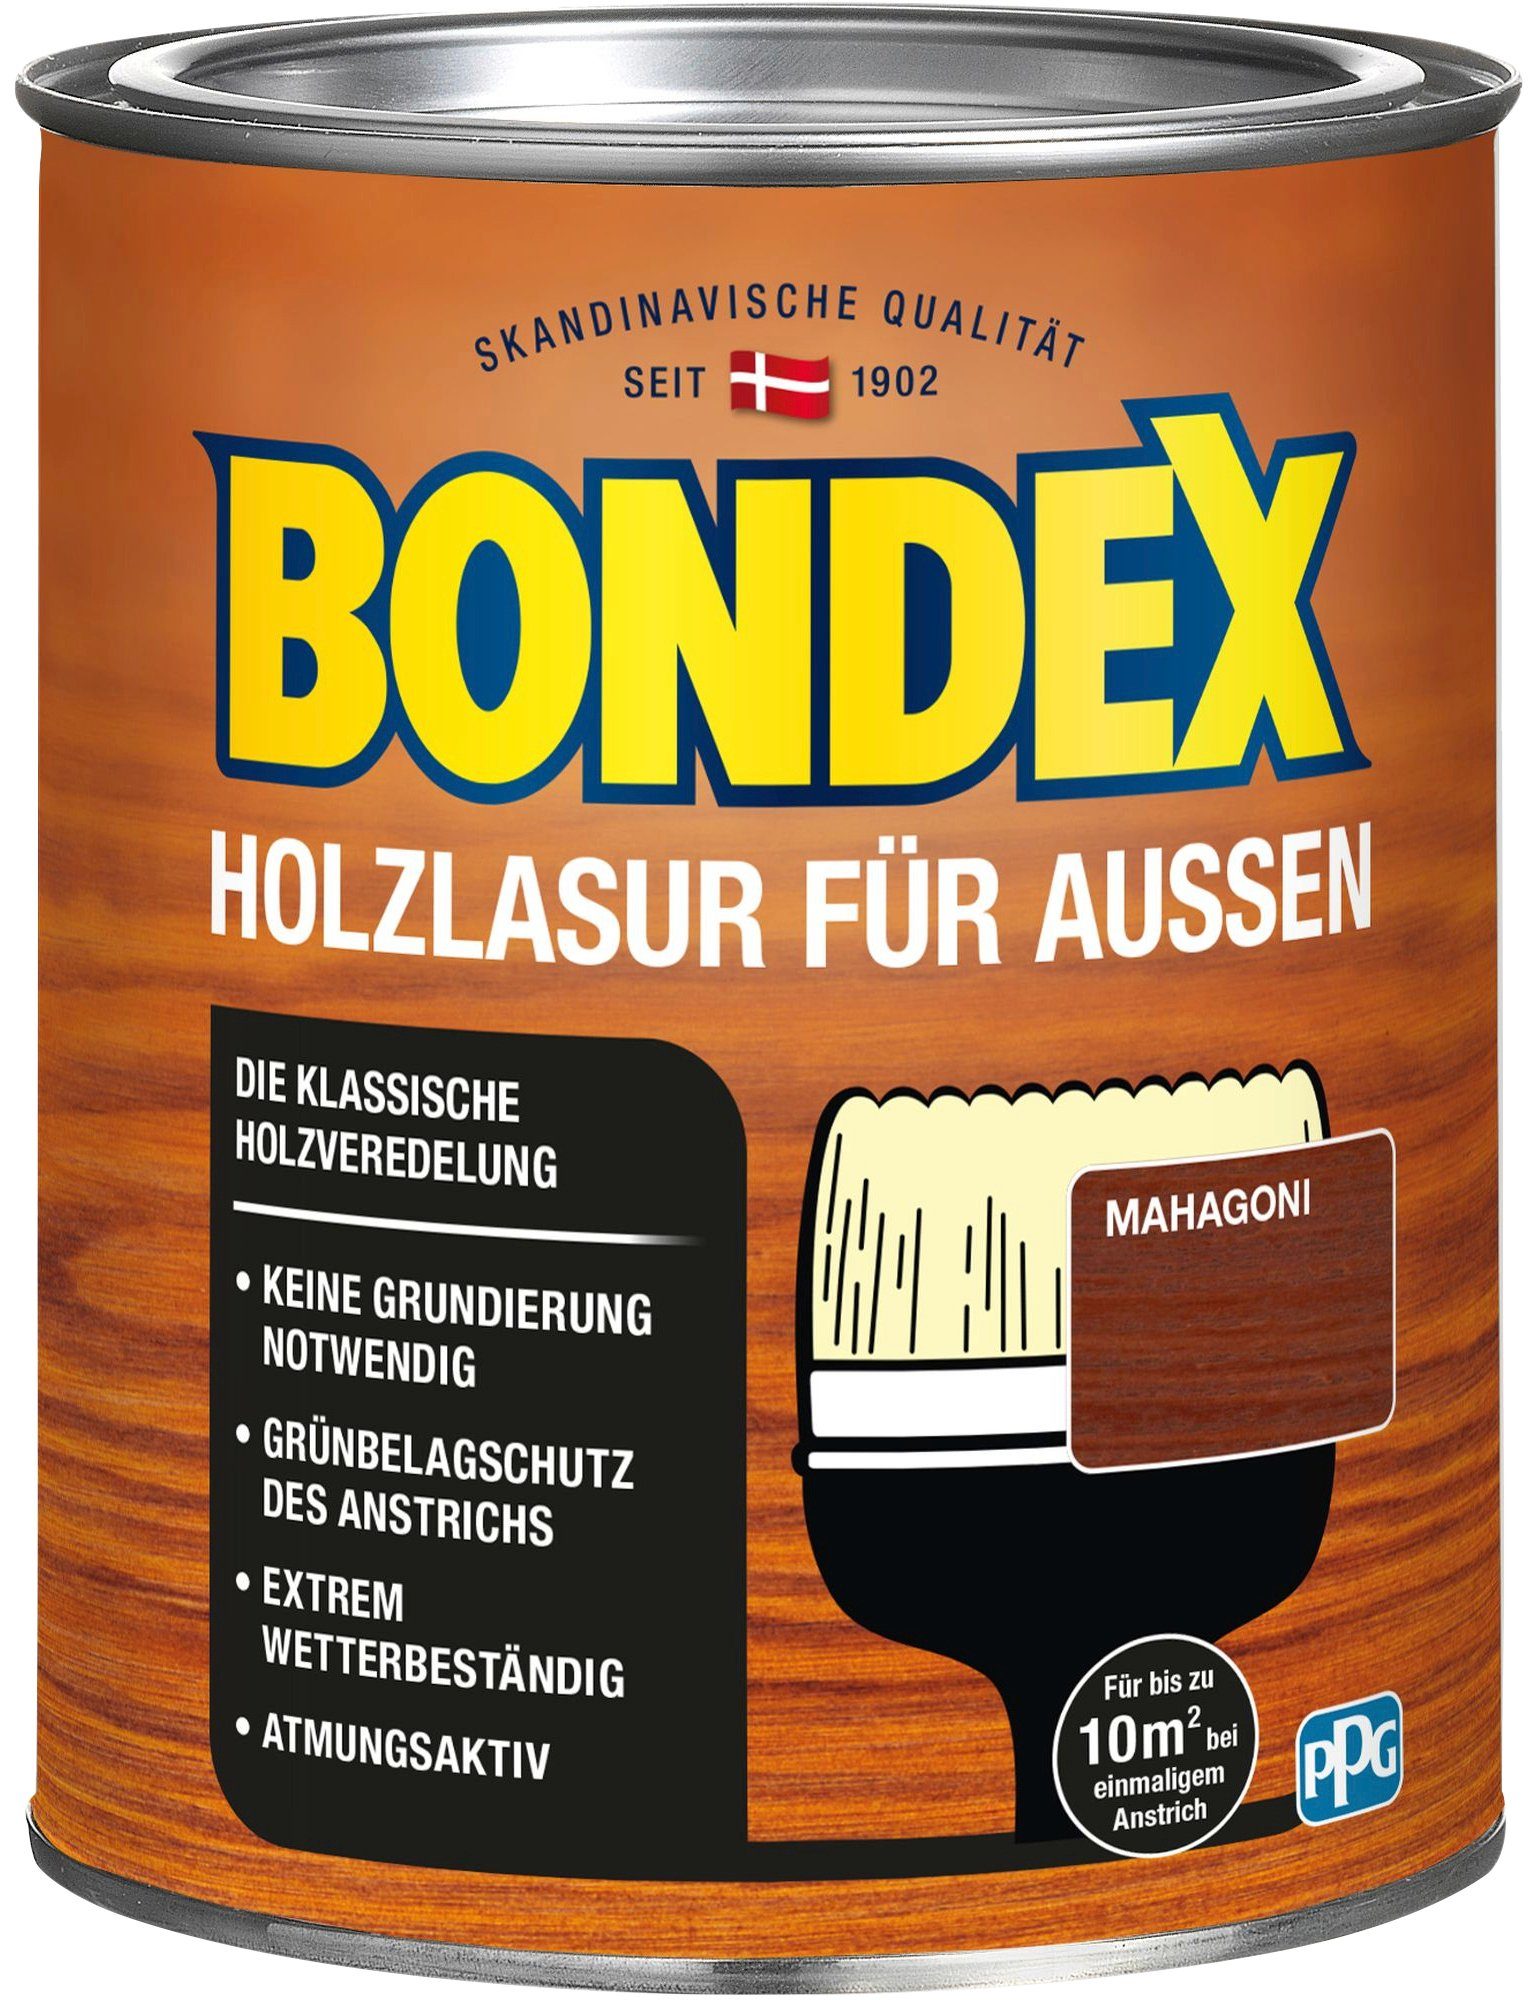 Bondex Holzschutzlasur in atmungsaktiv, Farbtönen AUSSEN, HOLZLASUR Wetterschutz versch. Holzverkleidung, Mahagoni FÜR